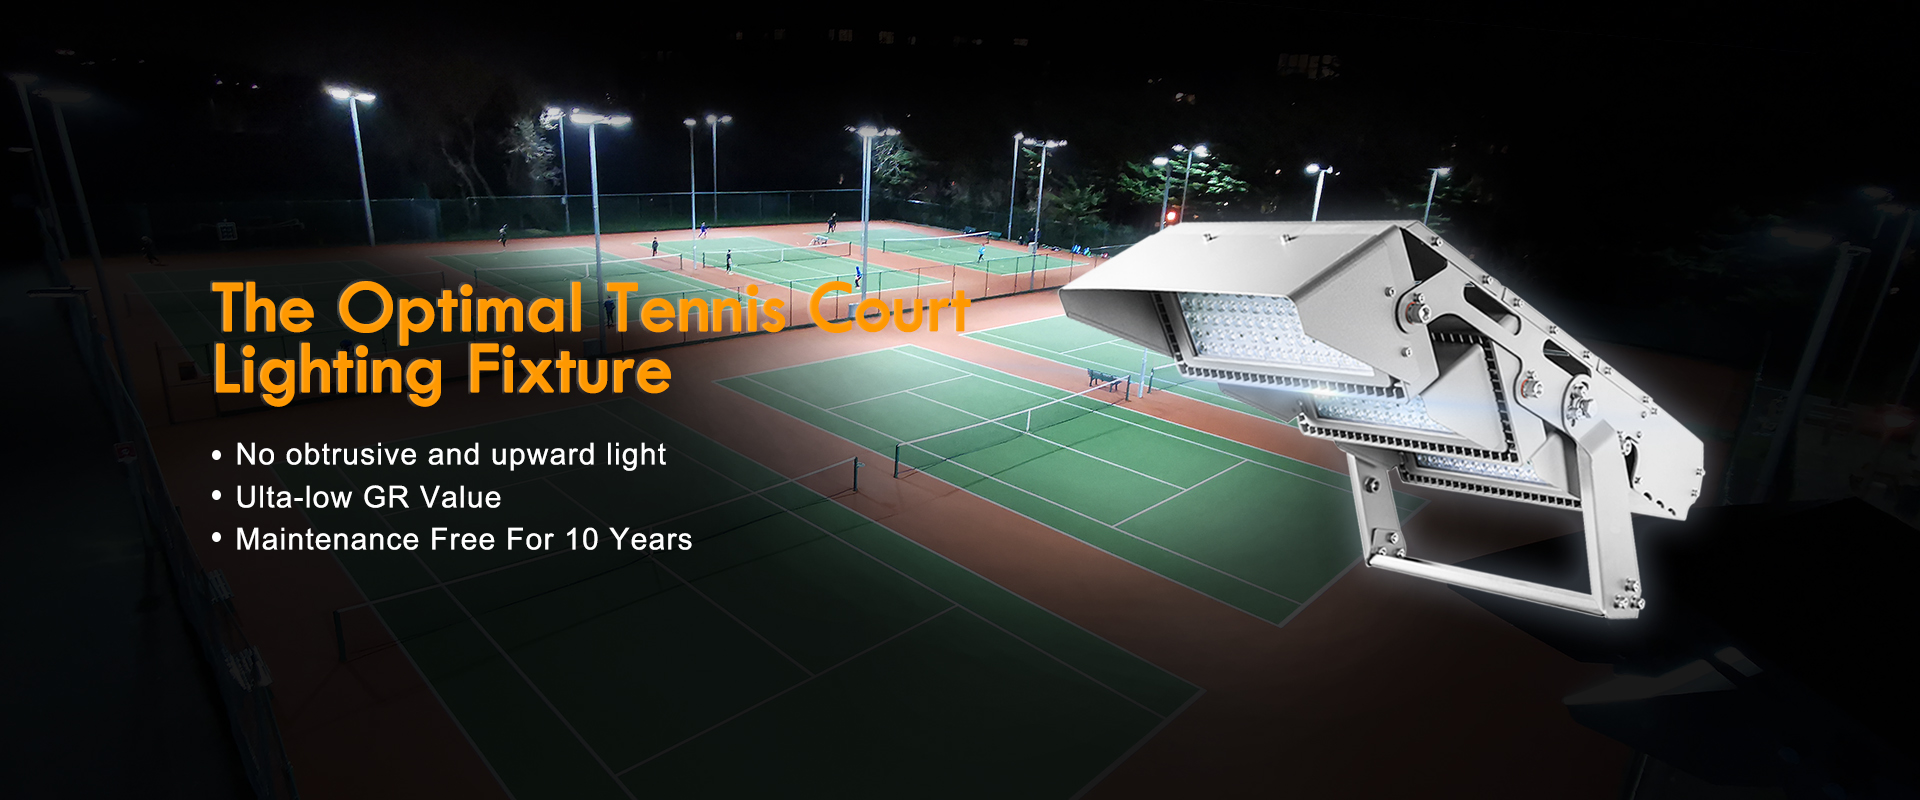 optimal tennis court lighting fixture